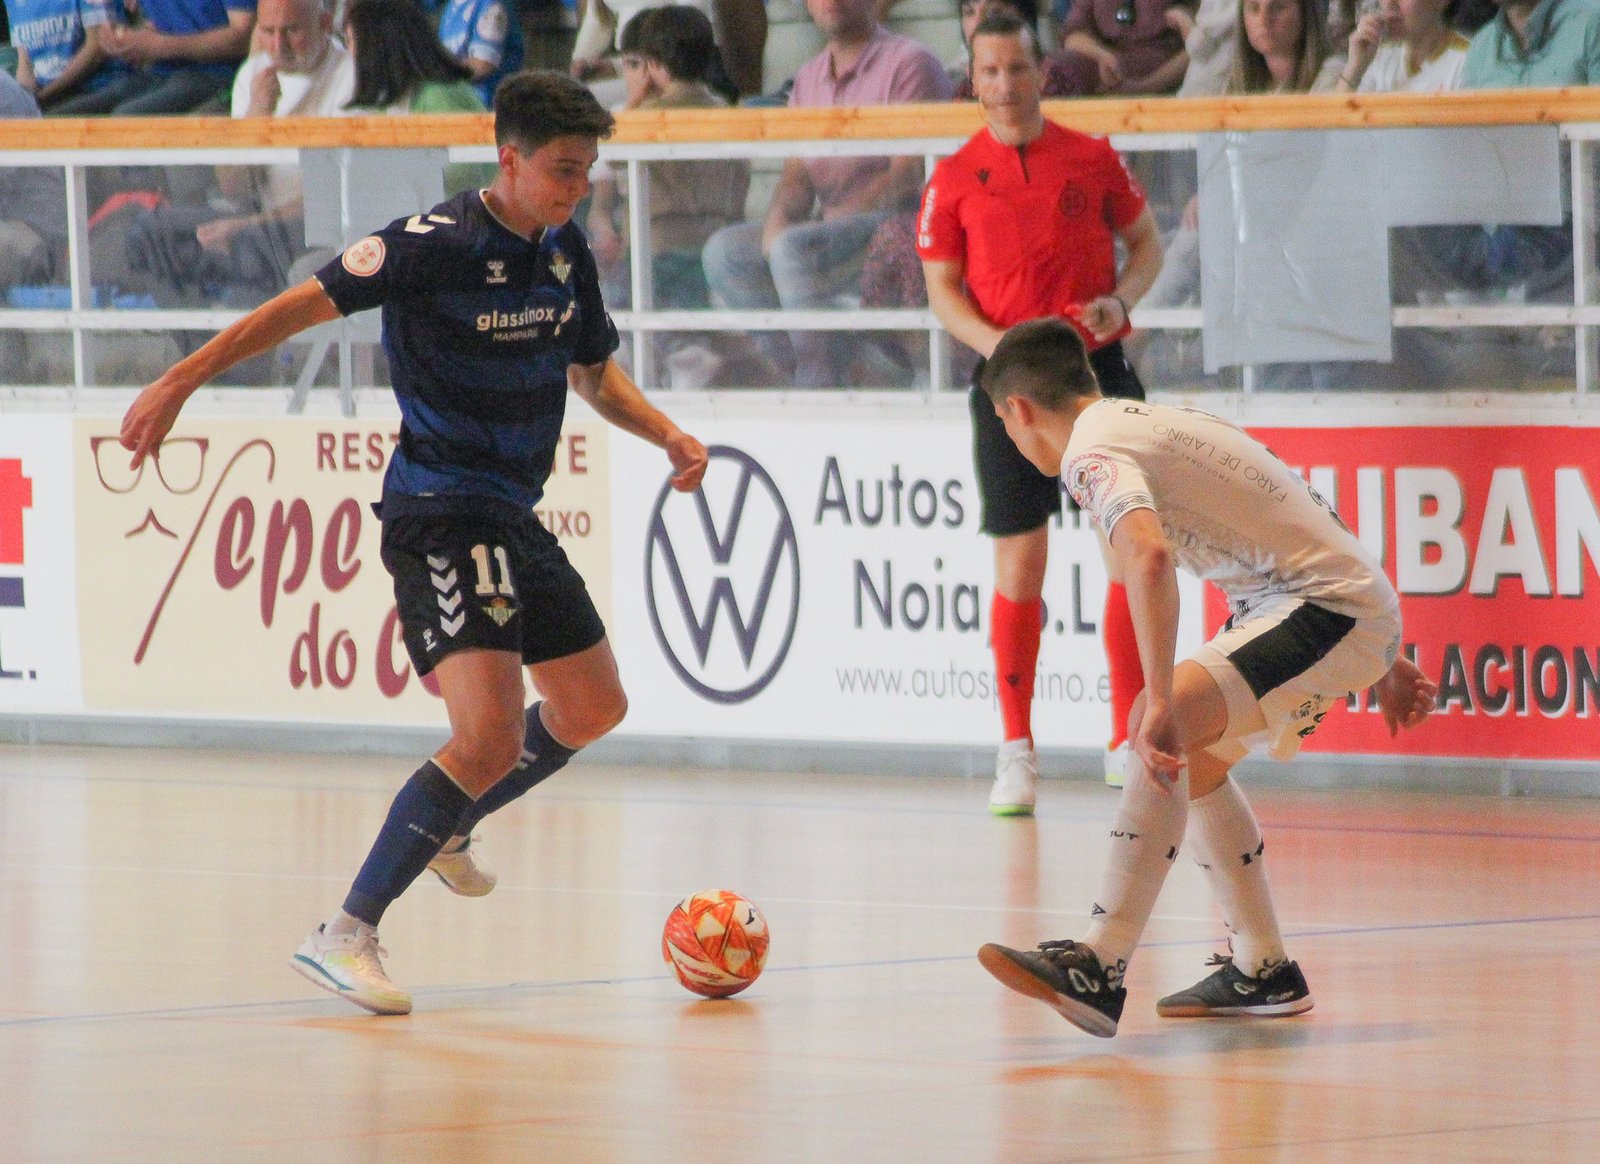 Raúl Jiménez encarando a un rival en el duelo entre el Noia y el Betis Futsal